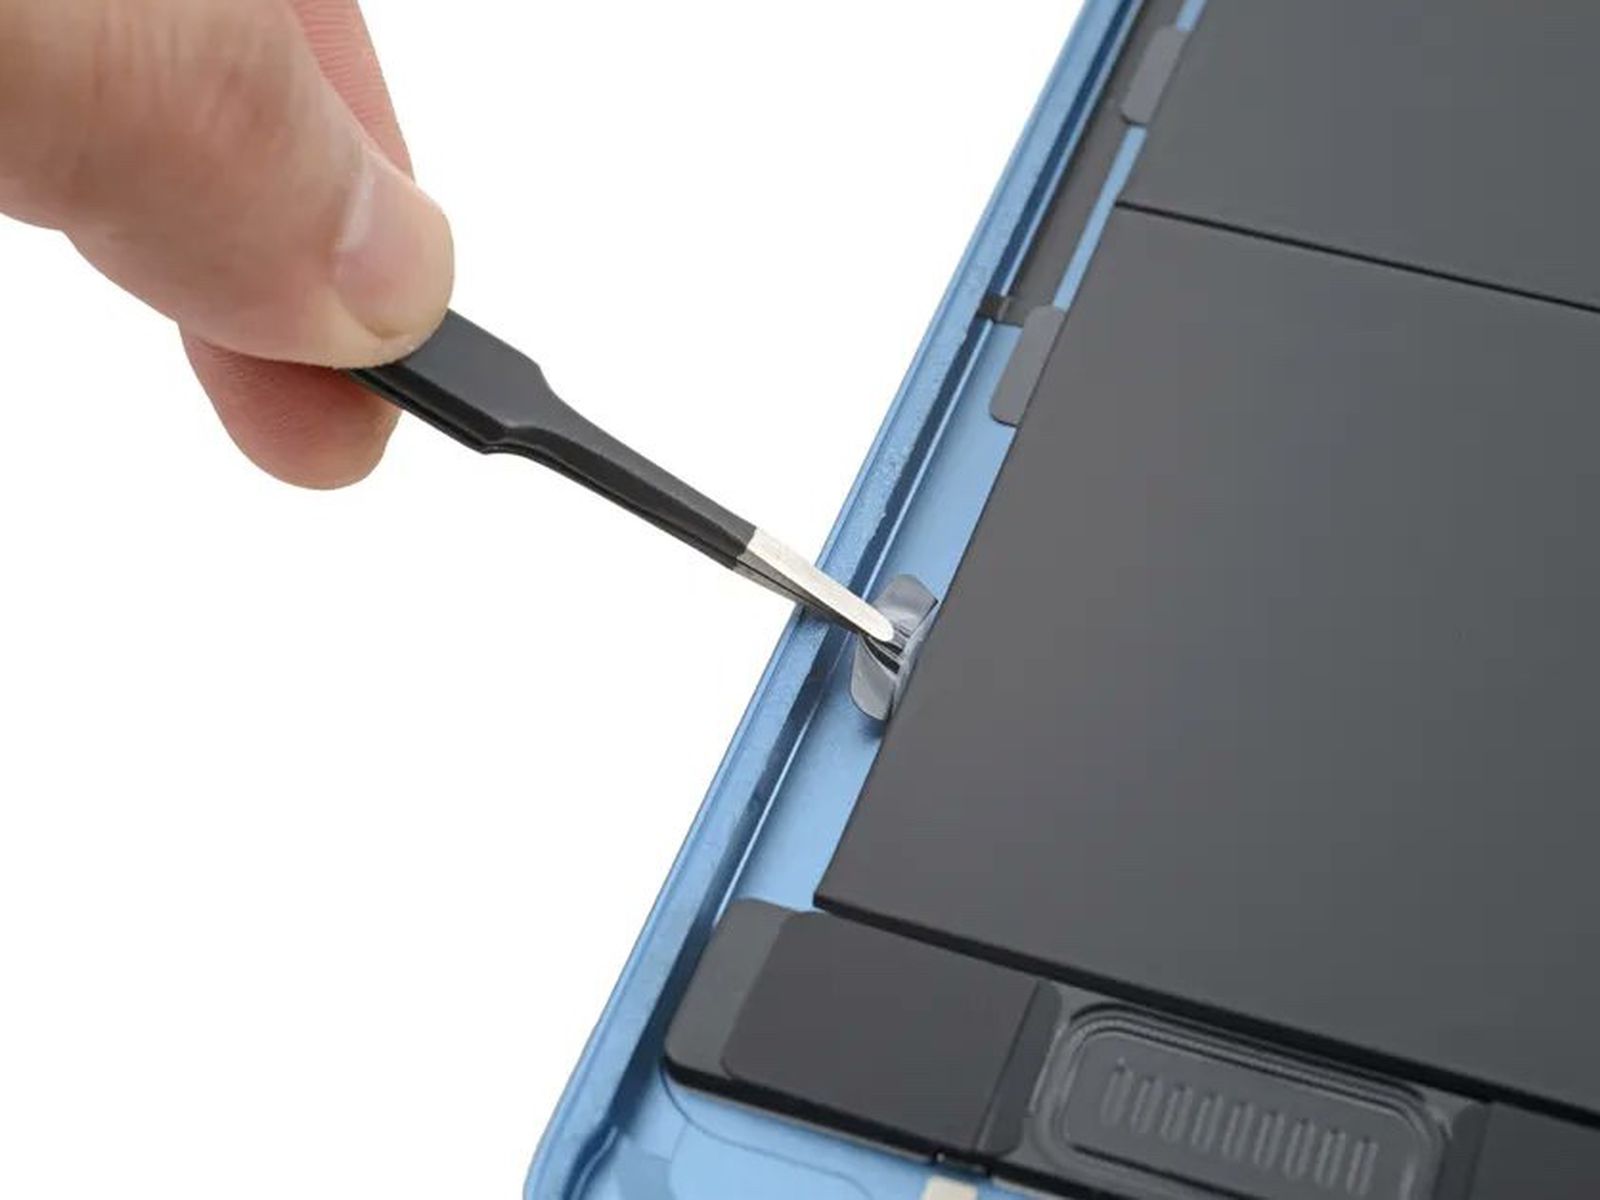 zeven Buitenboordmotor Sanctie iPad Air 5 Features Pull Tabs for Easier Battery Replacements - MacRumors